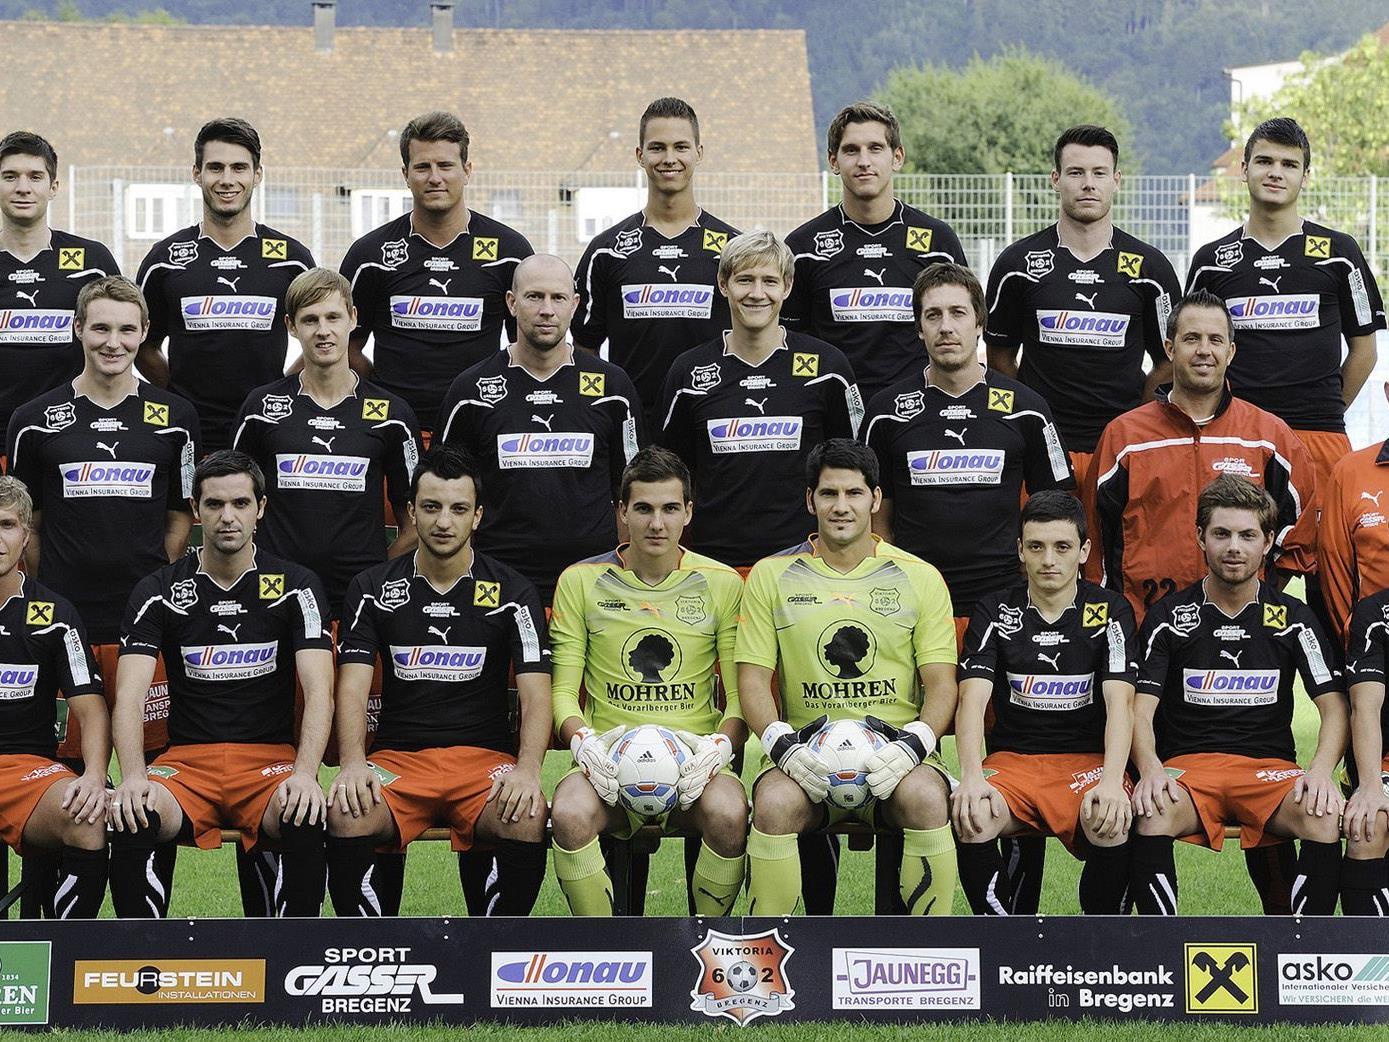 Der FC Viktoria 62 Bregenz ist auf das erste Frühjahrs-Heimspiel bestens vorbereitet.